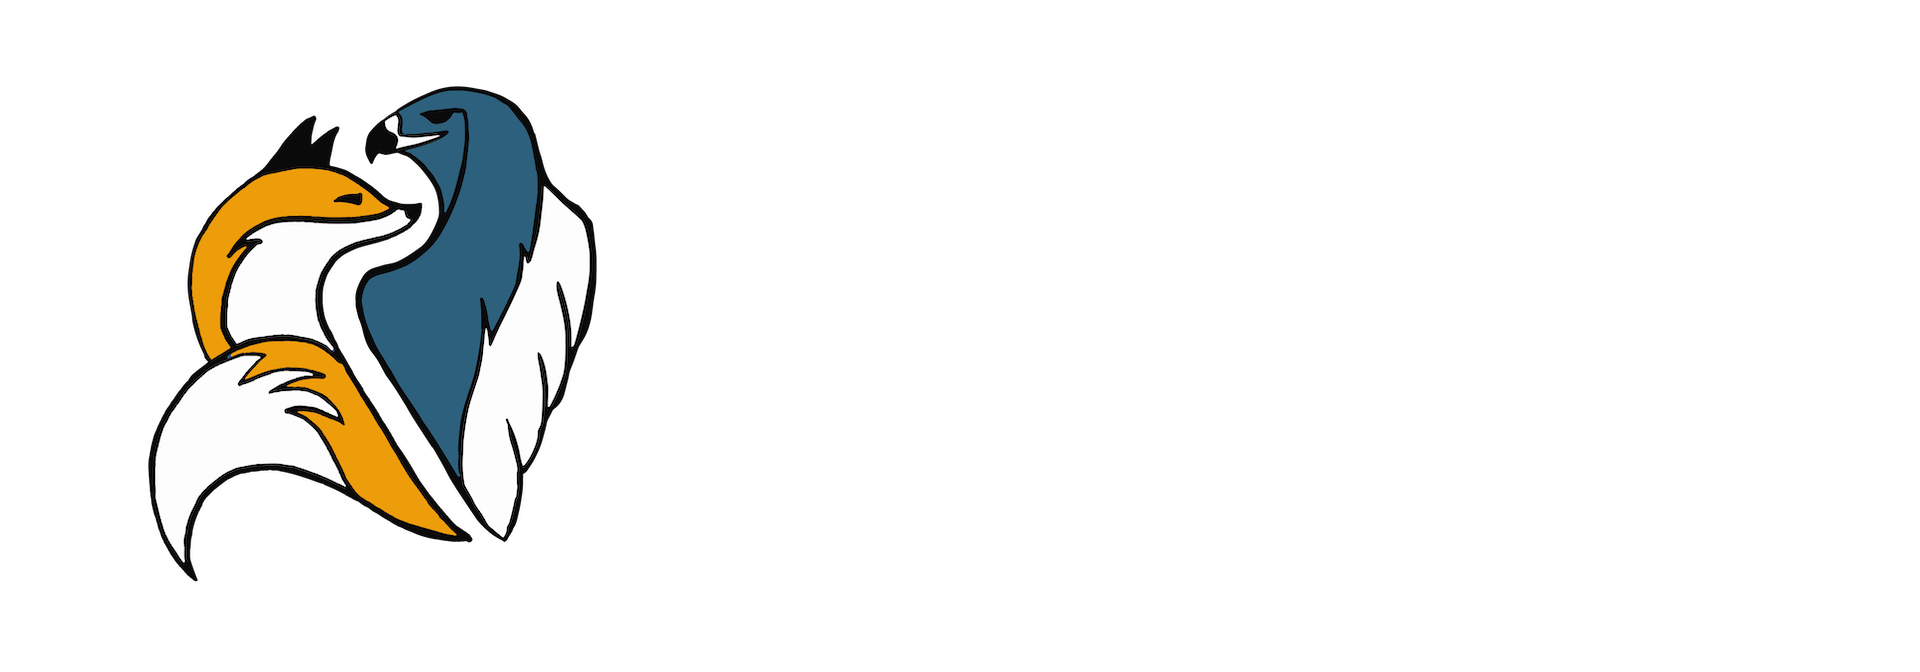 Fox & Hawk's Botanicals